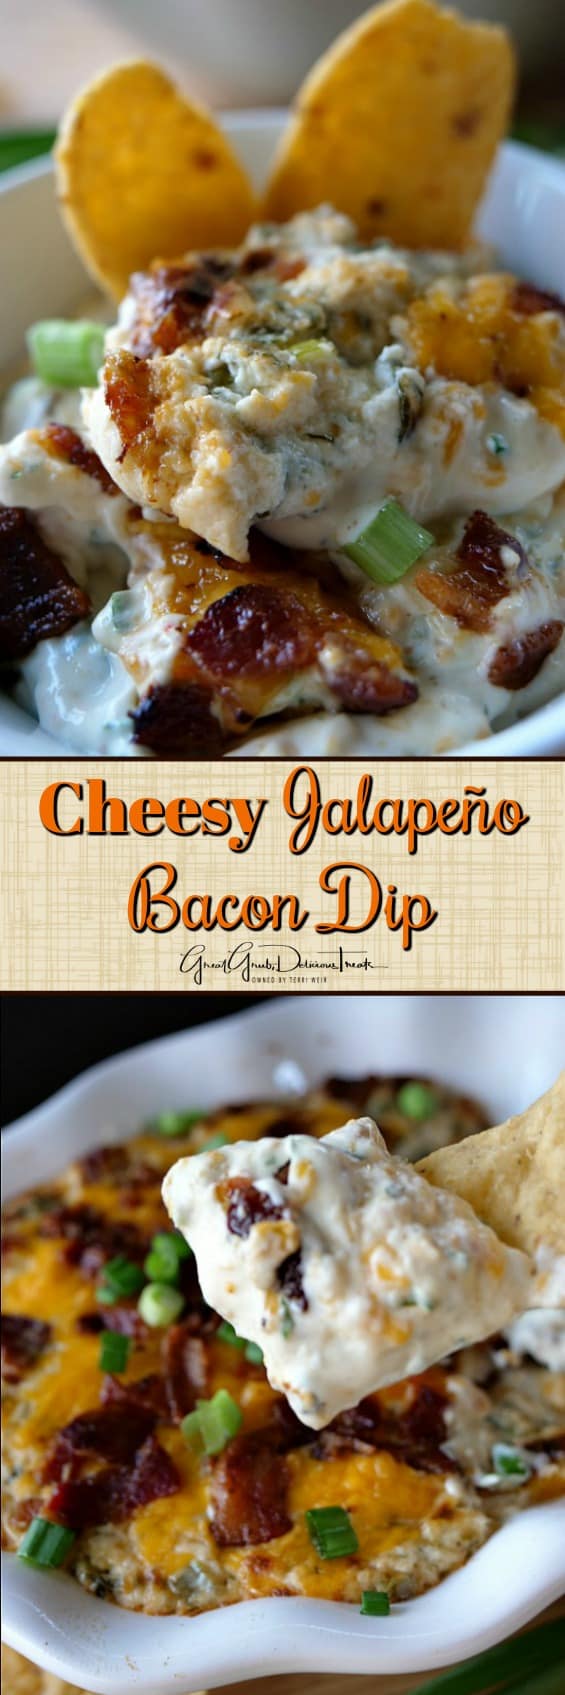 Cheesy Jalapeño Bacon Dip